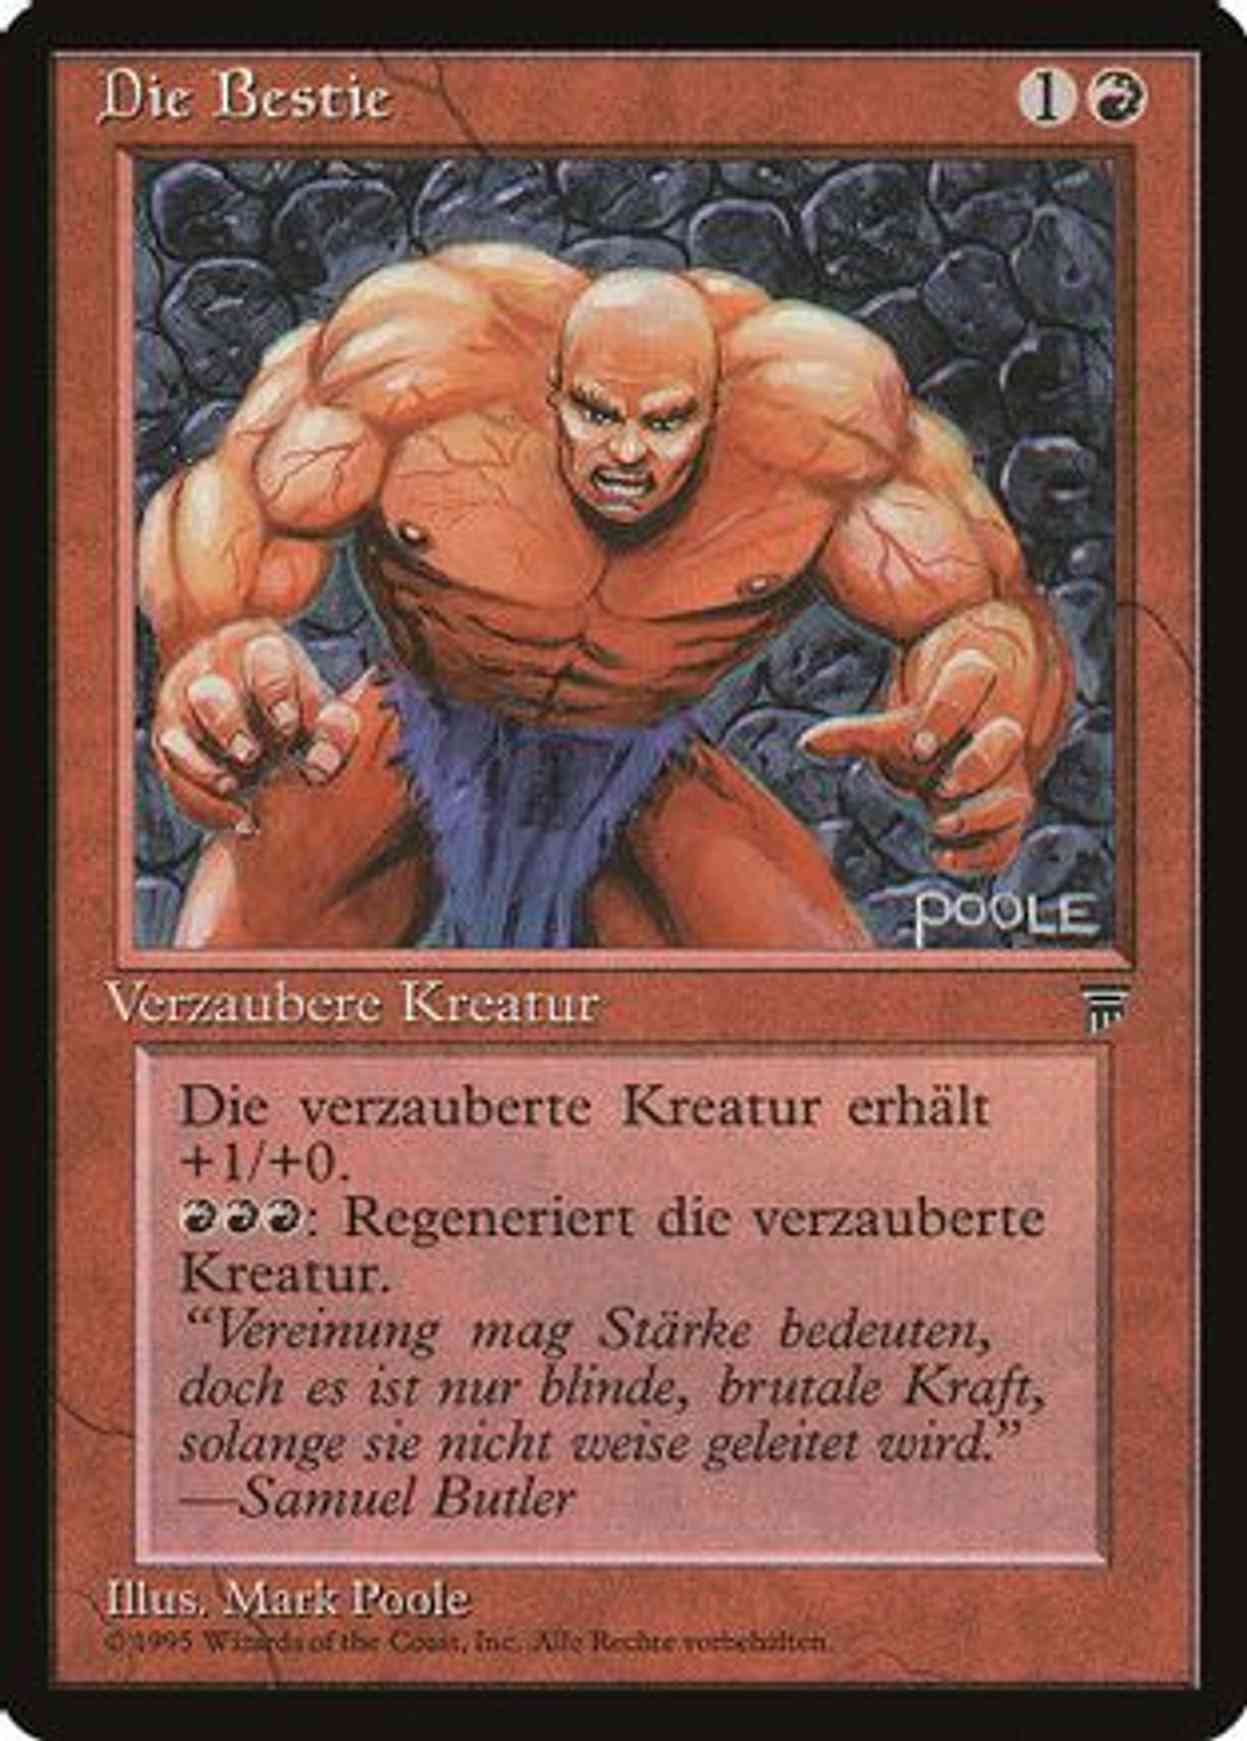 The Brute (German) - "Die Bestie" magic card front